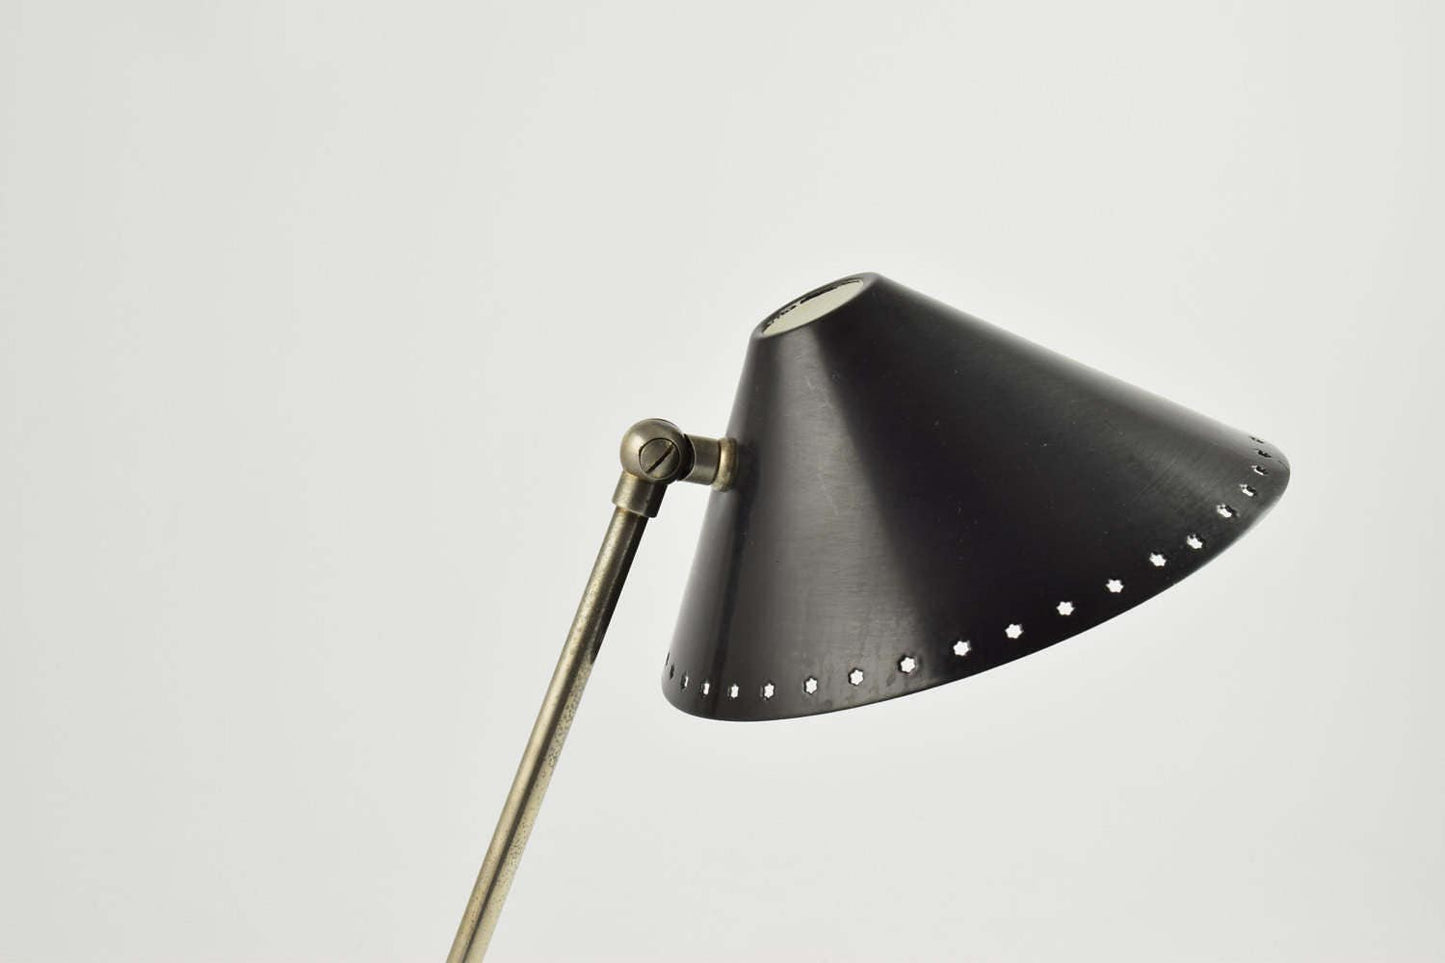 Pinokkio lamp of pinokkio lamp van H.Busquet van hala minimalistisch industrieel icoon uit de vijftiger jaren